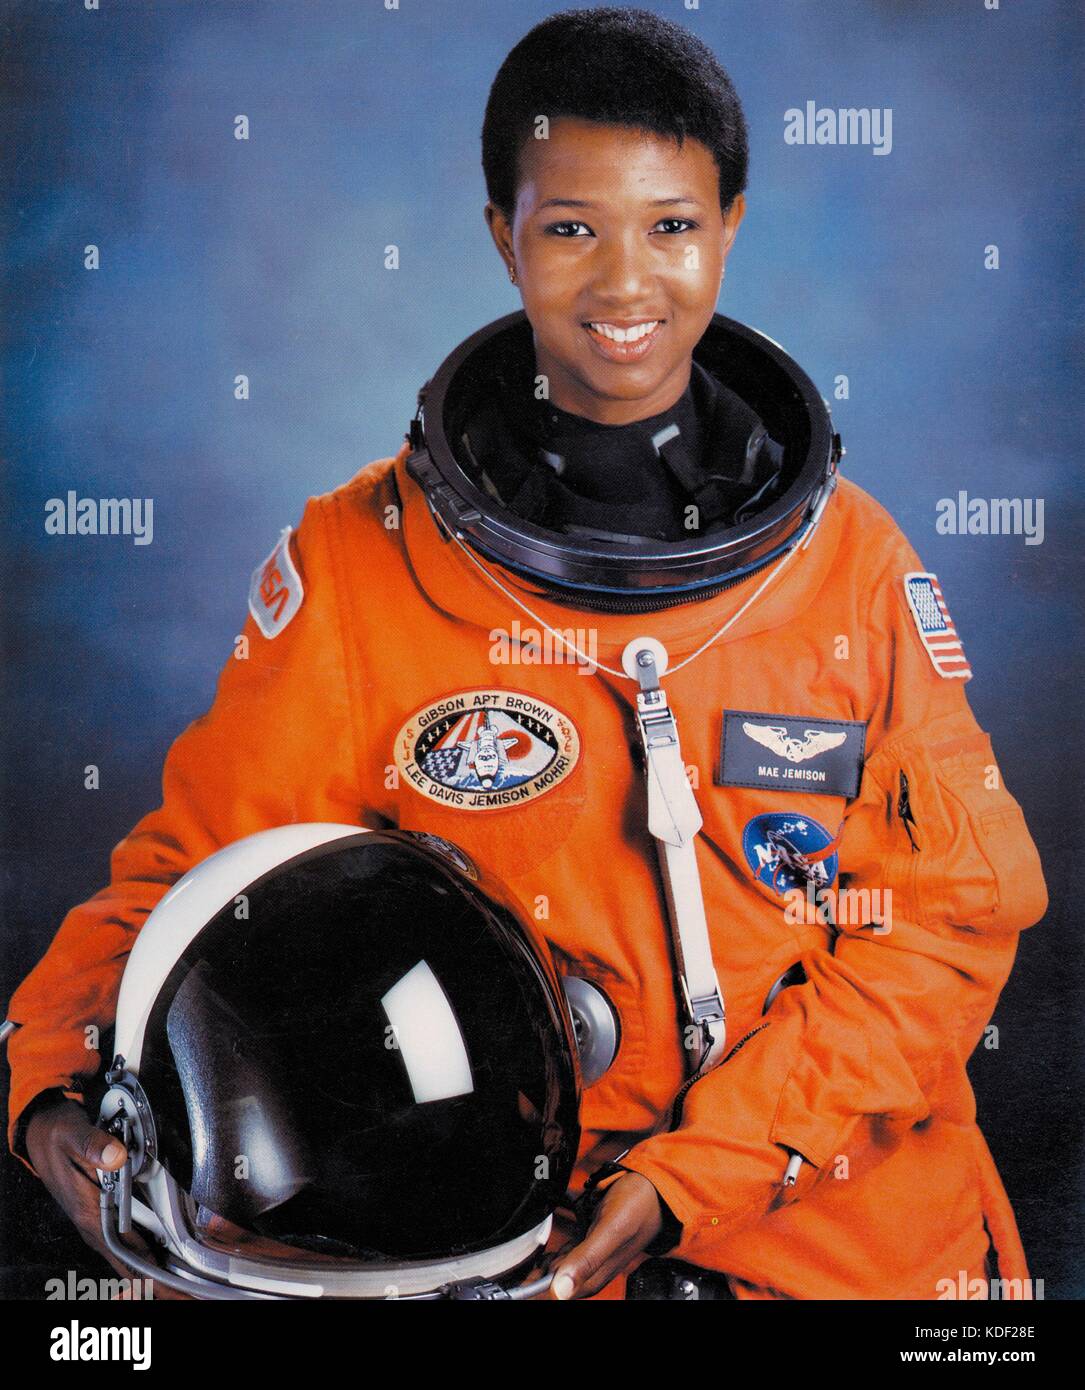 Ritratto ufficiale della NASA STS-47 spacelab-j lo Space Shuttle Endeavour missione il primo equipaggio astronauta dr. mae jemison in un arancione spacesuit presso il Johnson Space Center luglio 1, 1992 in Houston Texas. jamison è stato il primo afro-americano della donna nello spazio. (Foto di foto nasa via planetpix) Foto Stock